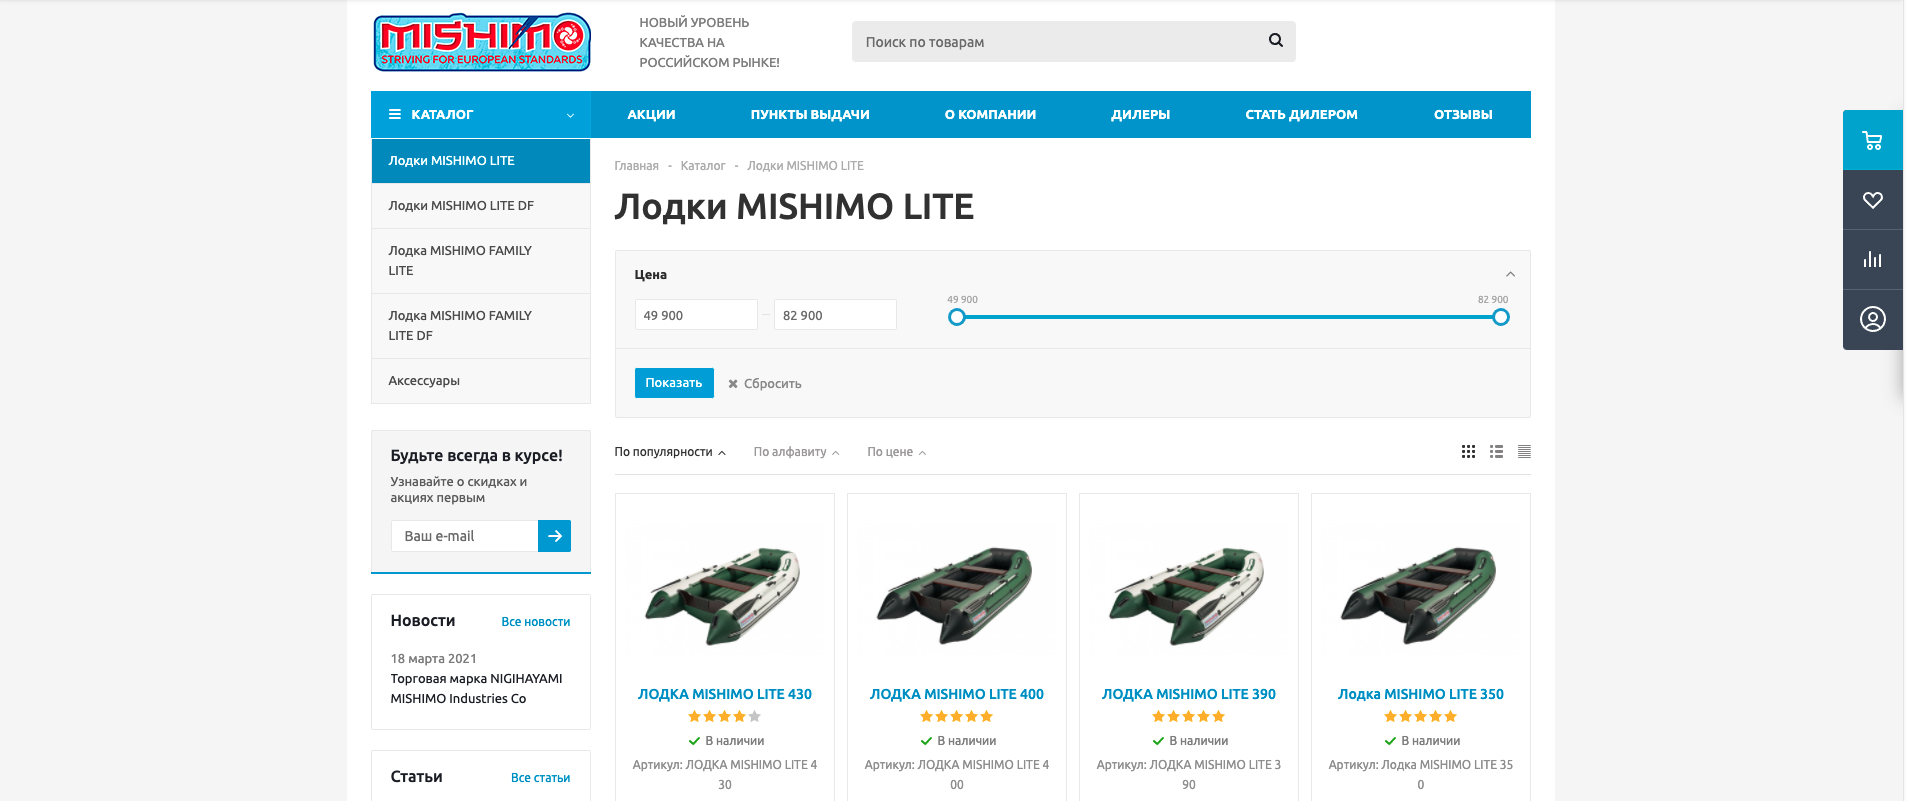 mishimo.ru